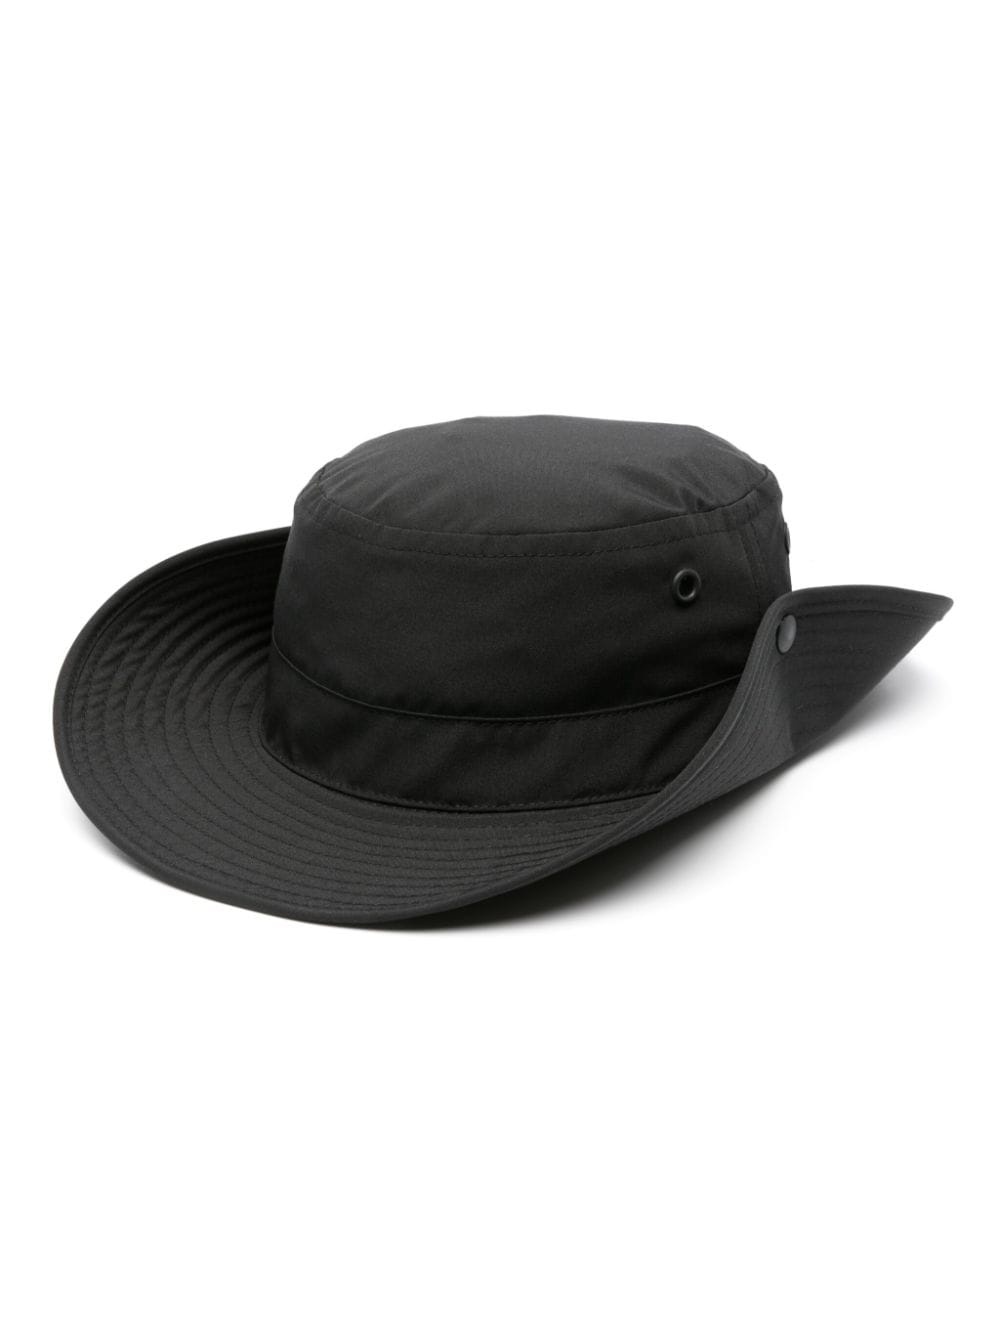 Venture cotton safari hat - 1